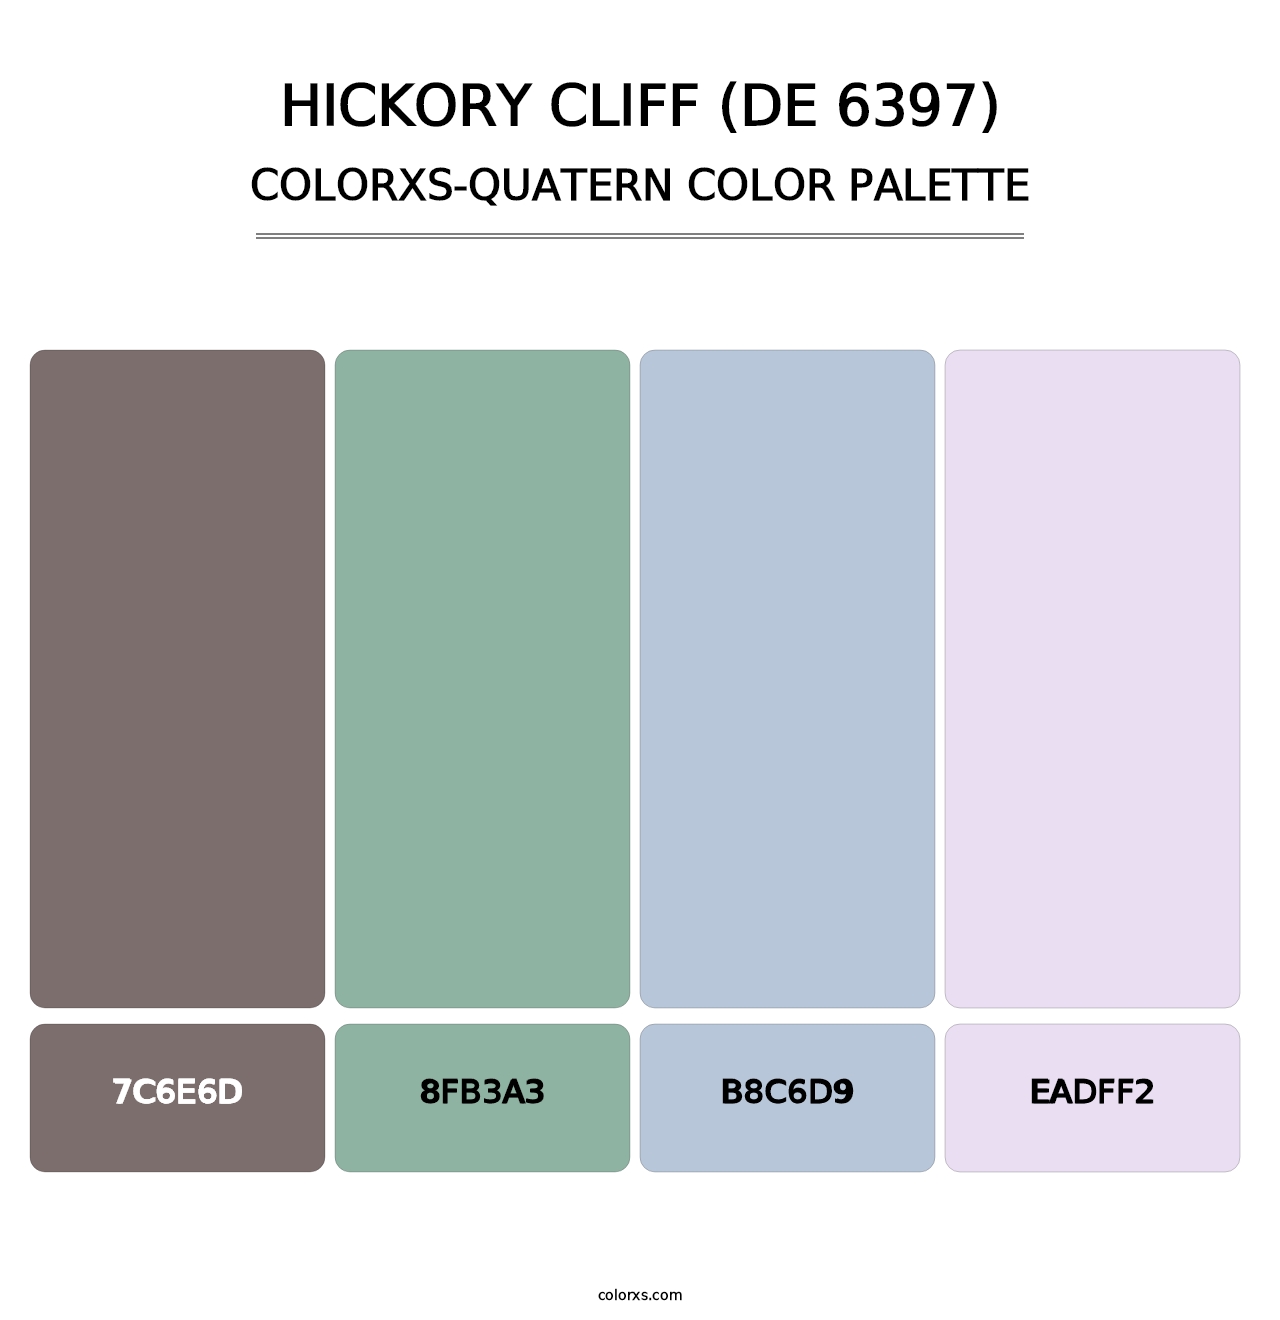 Hickory Cliff (DE 6397) - Colorxs Quatern Palette